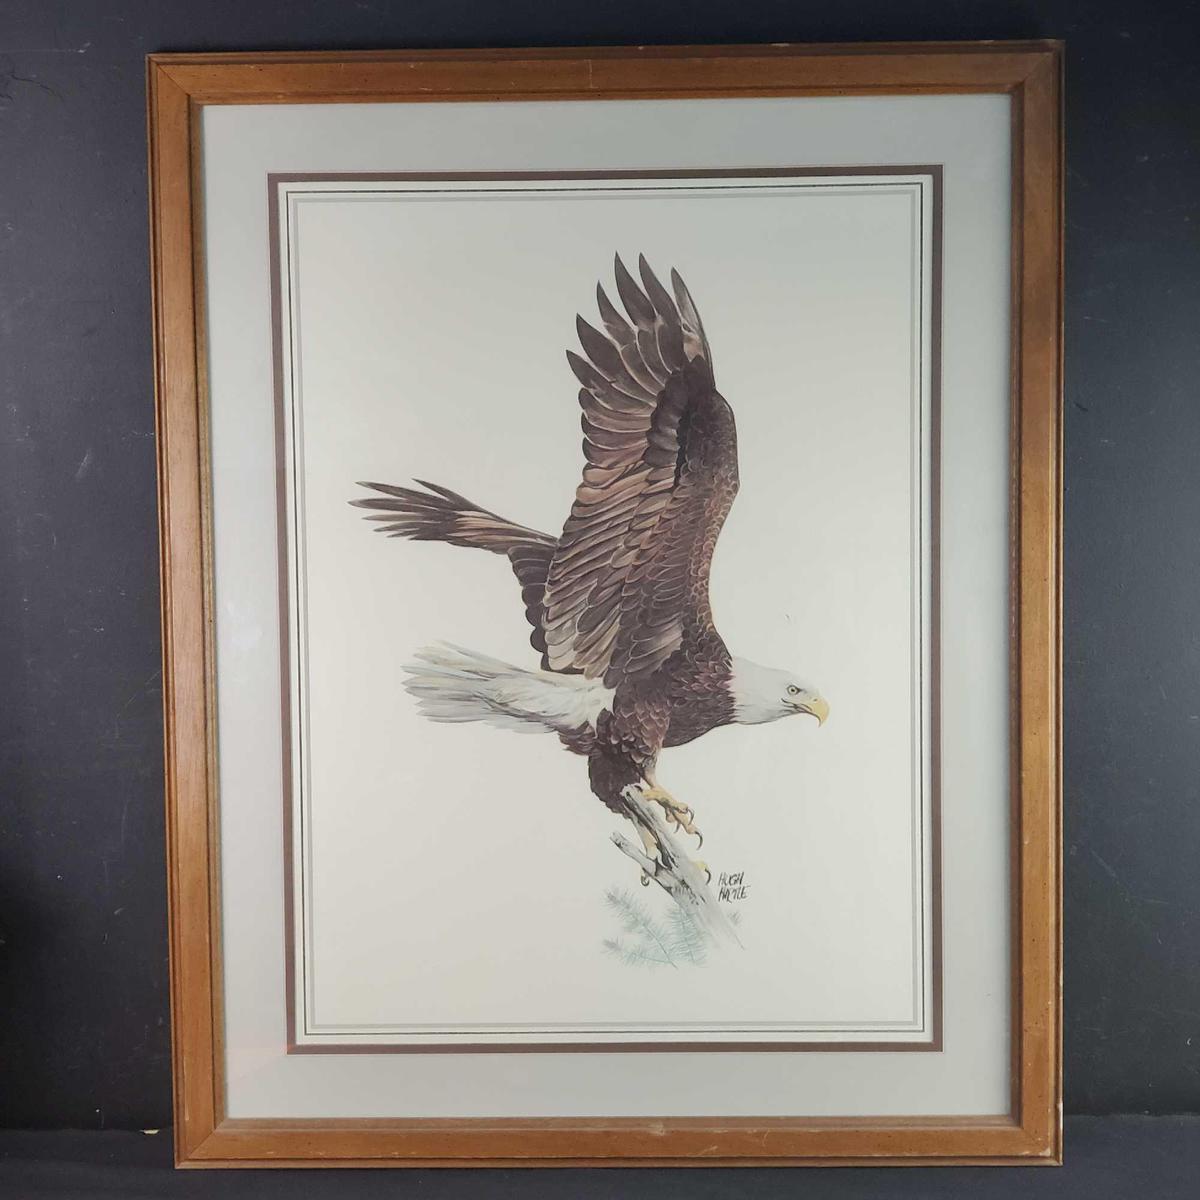 Framed American bald eagle print signed Hugh Hirtle